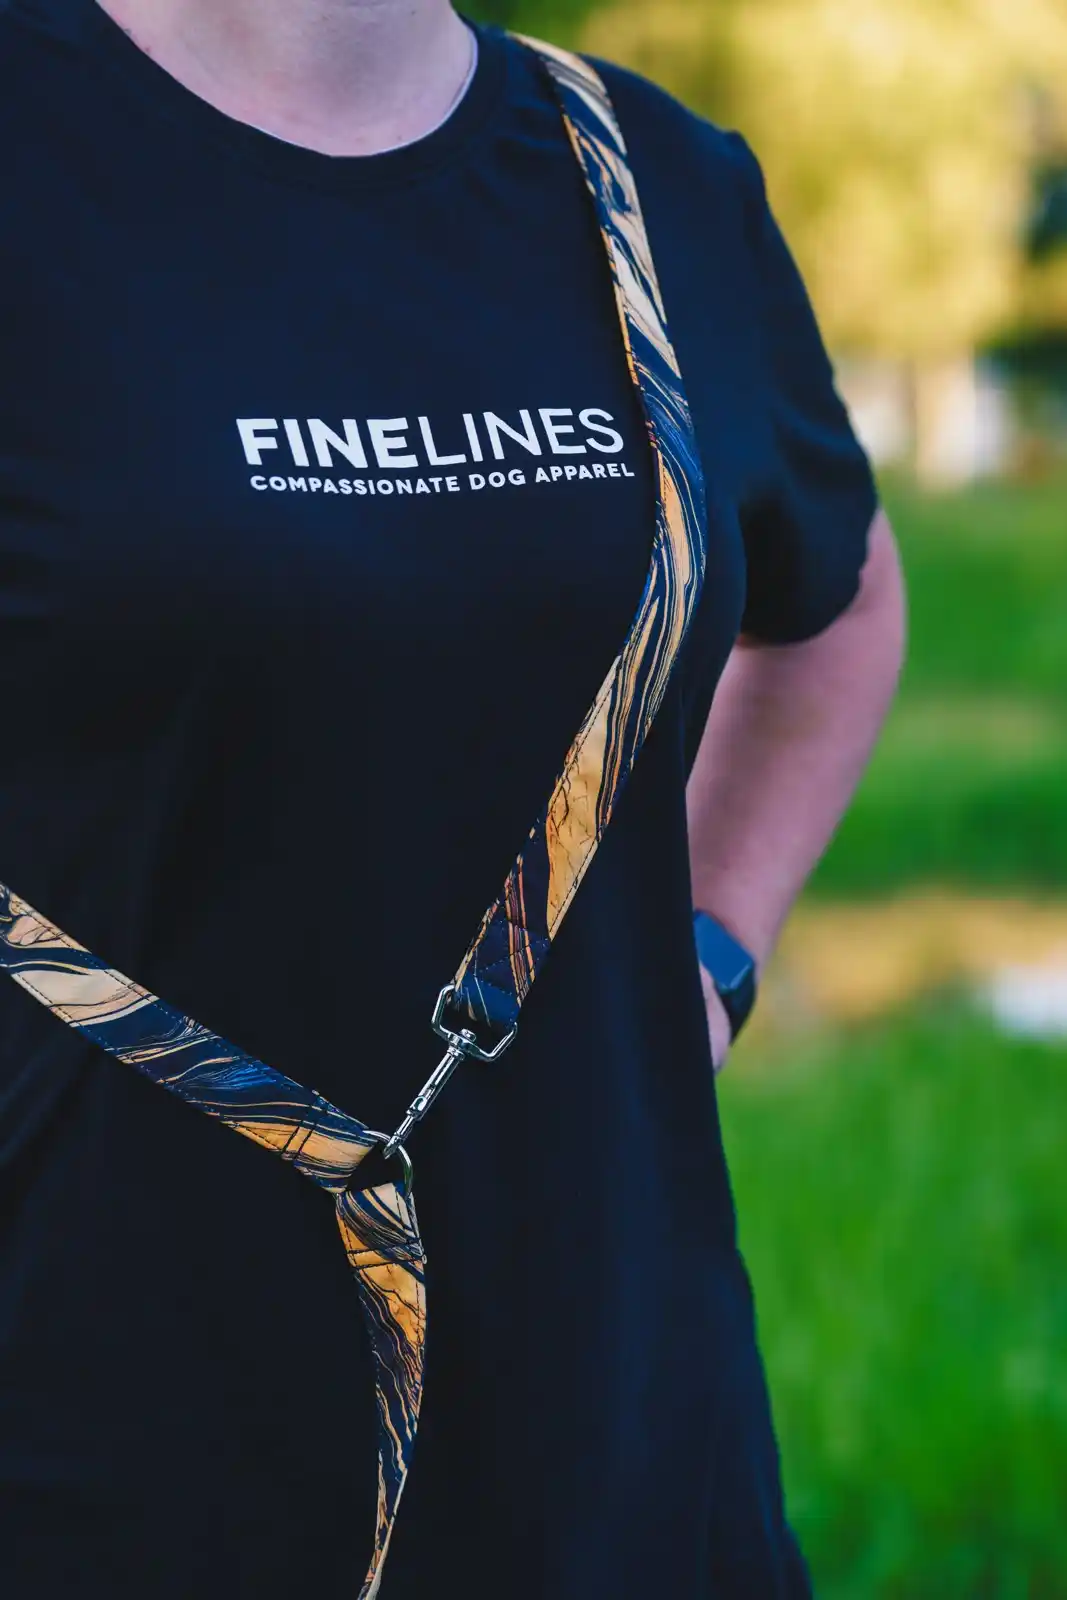 Produktová fotografie obojků, vodítek a triček pro Finelines.